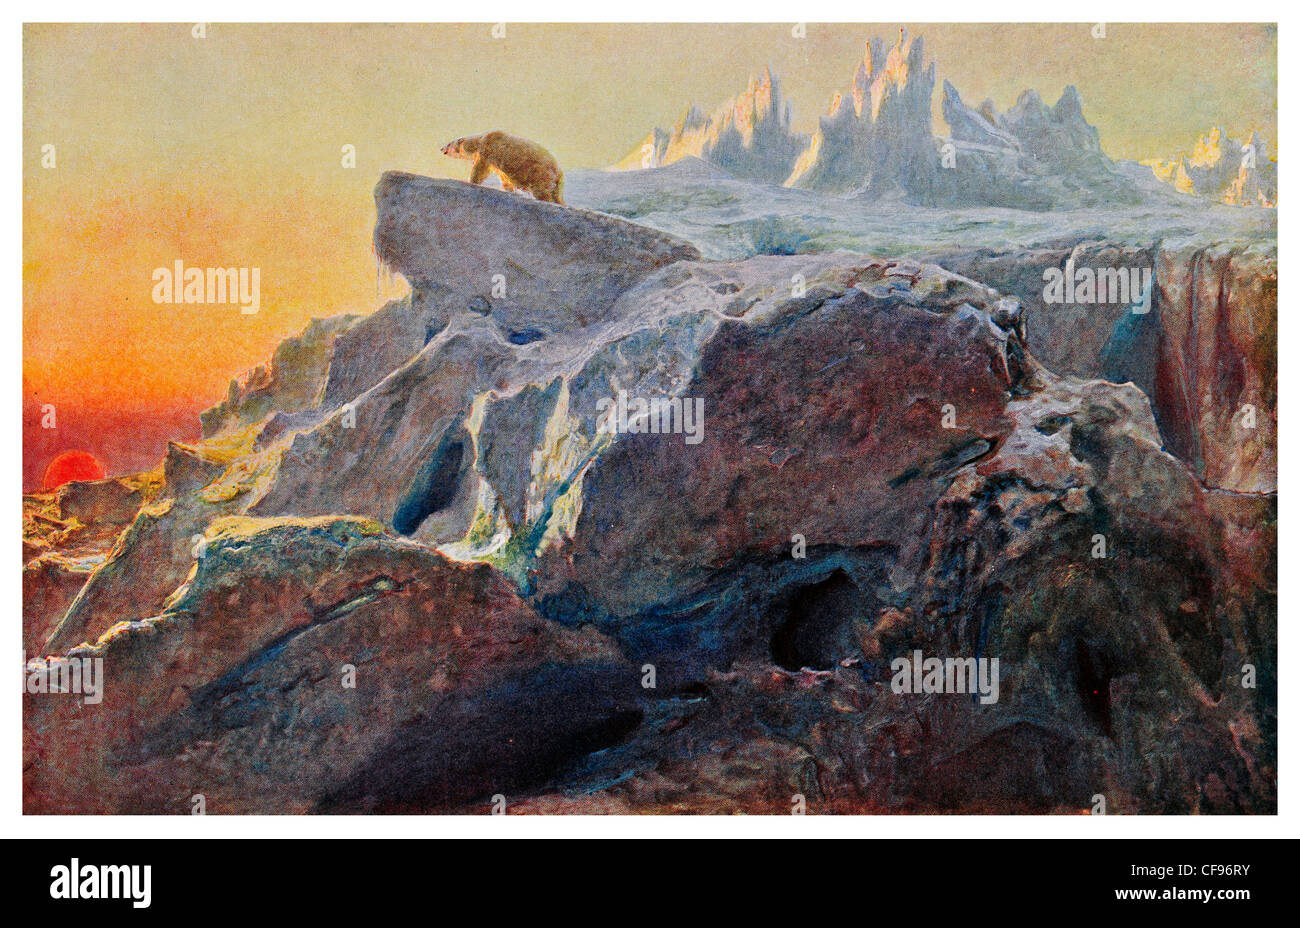 Al di là dell'uomo le orme da Briton Riviere Wild Orso Polare ghiacciaio al tramonto del Polo Nord Ice neve invernale animale predatore bestia peak Foto Stock